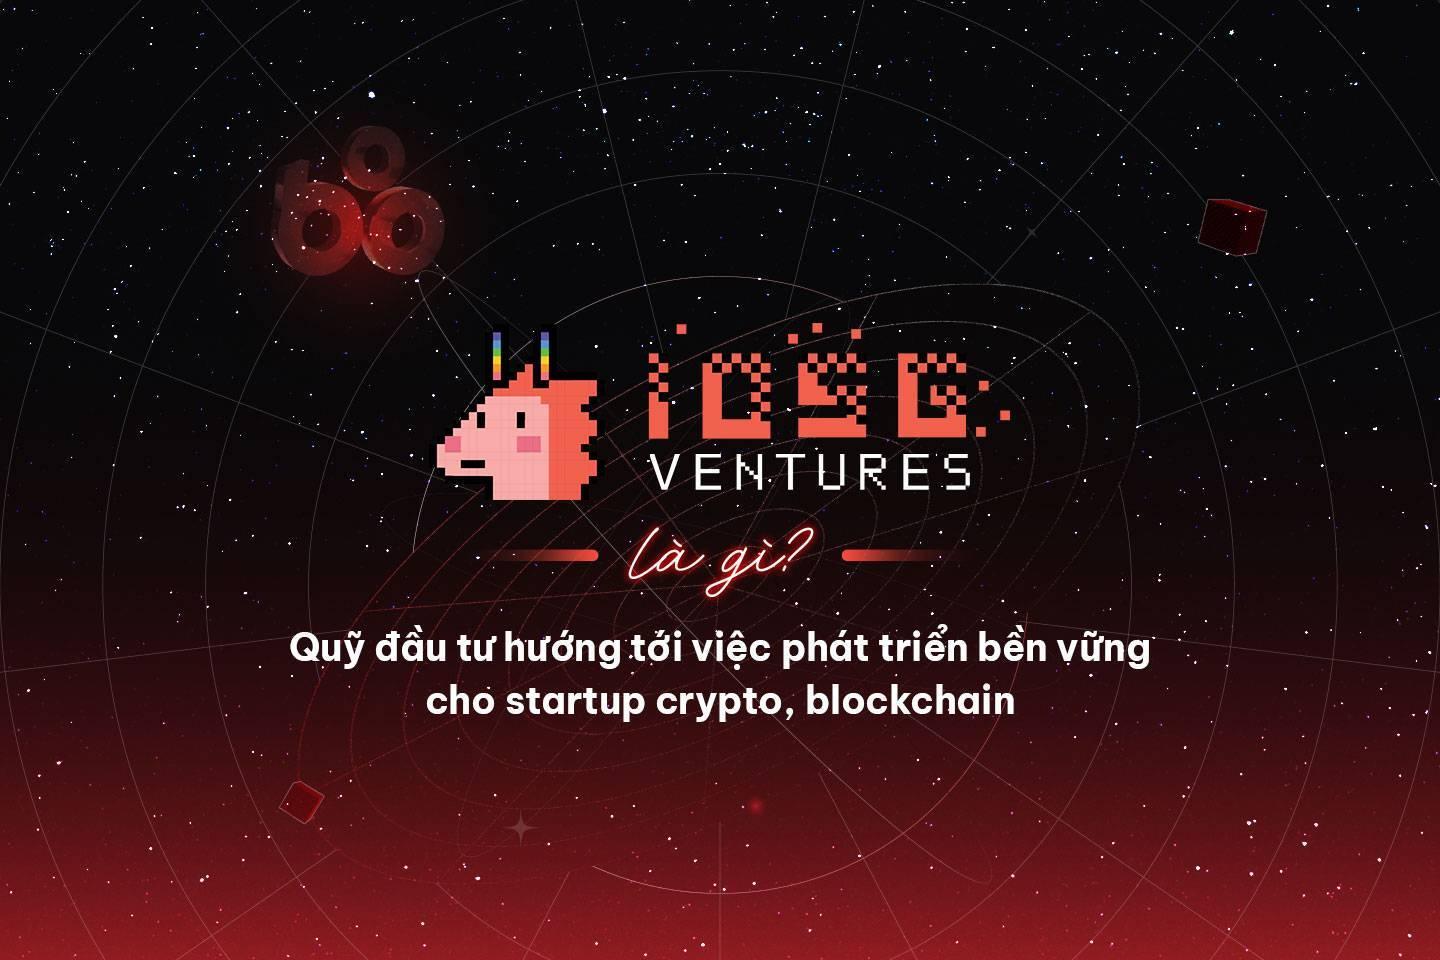 iosg-ventures-la-gi-quy-dau-tu-huong-toi-viec-phat-trien-ben-vung-cho-startup-crypto-blockchain